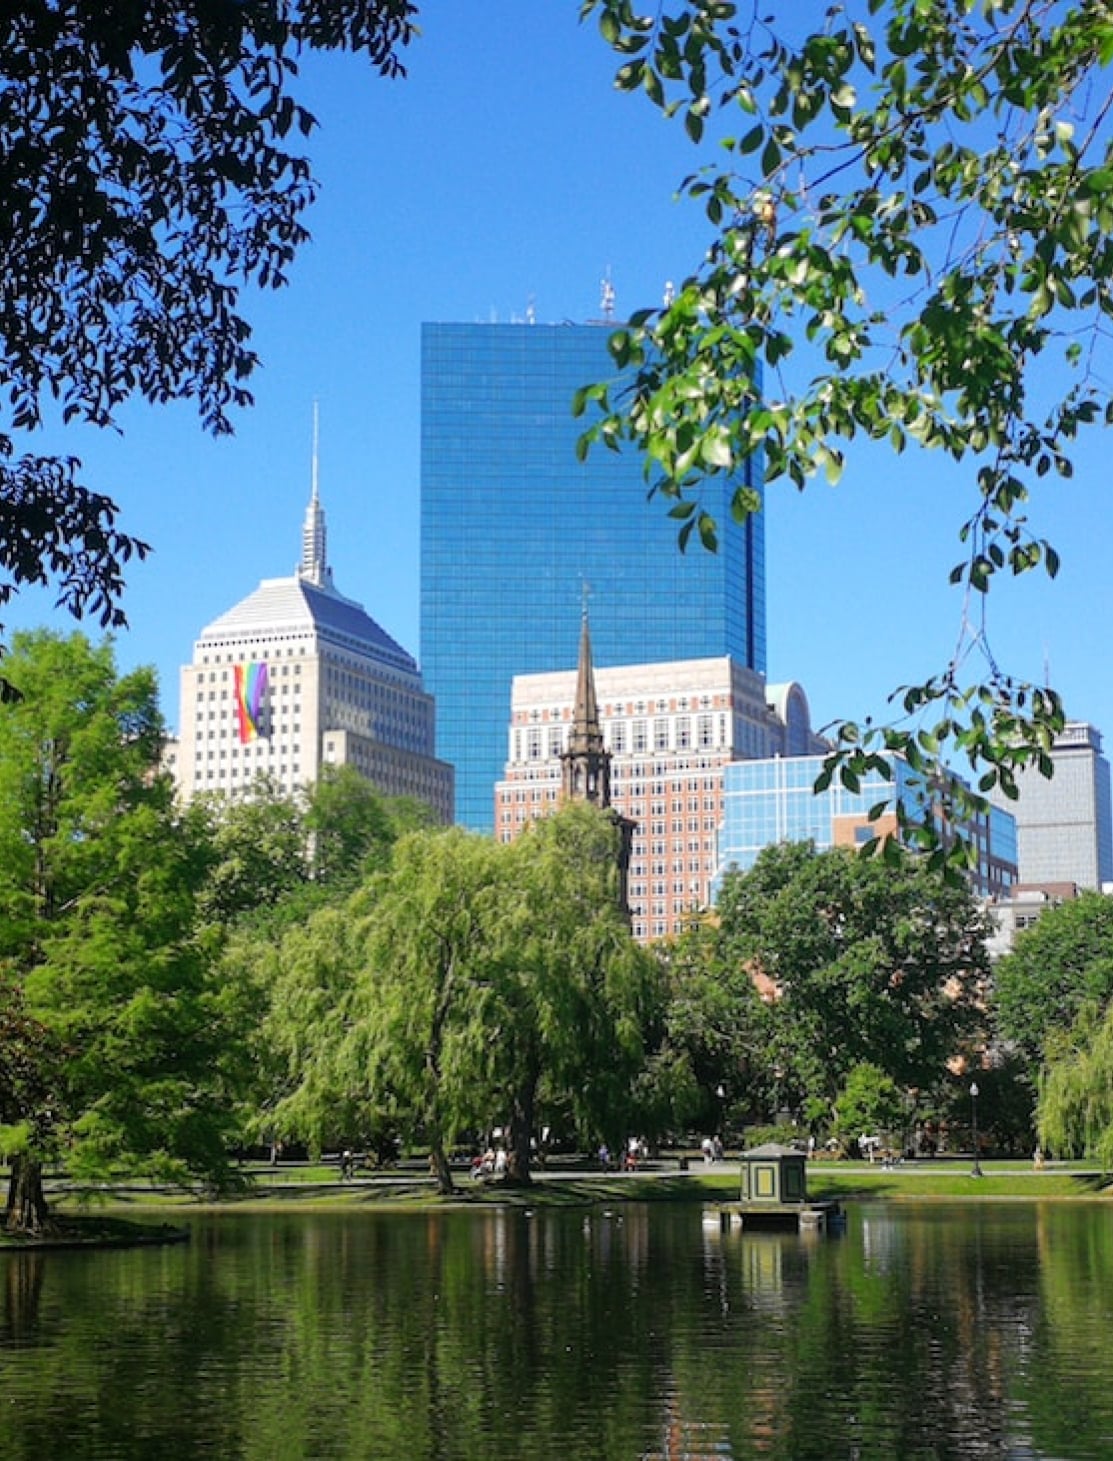 Park views of Boston